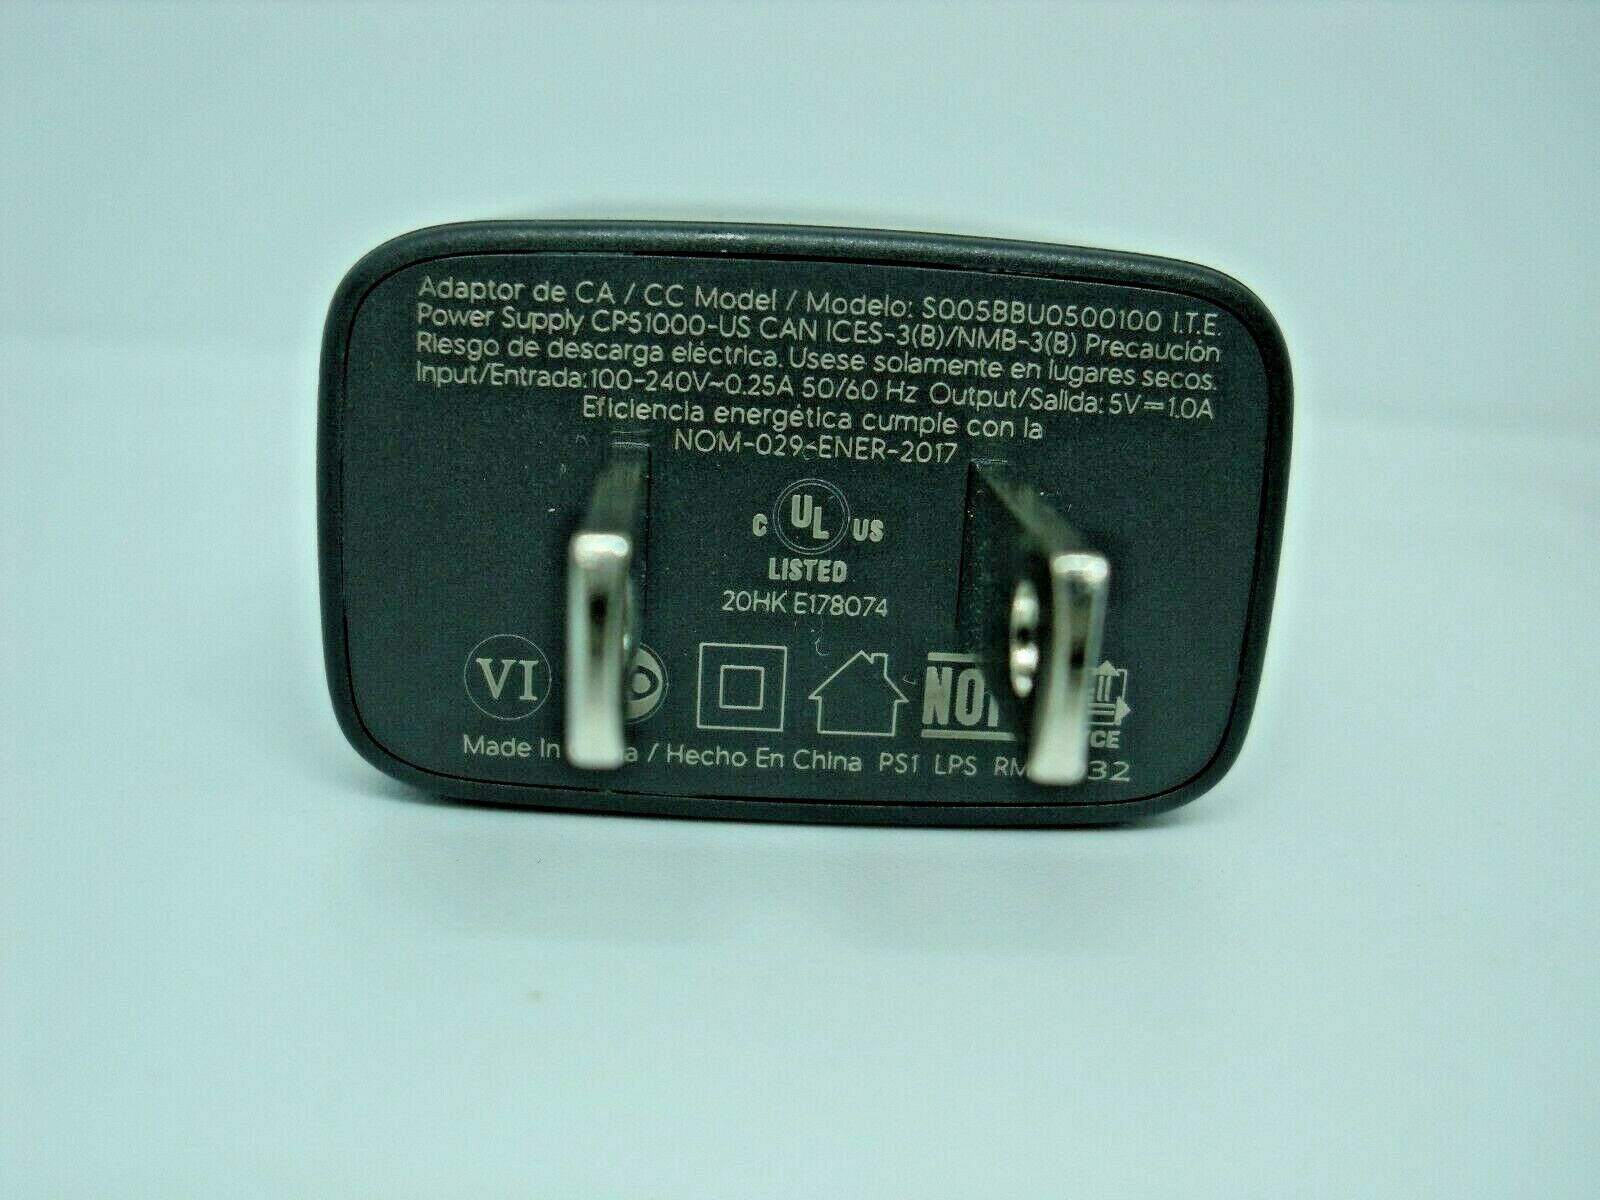 AC DC Power Adaptor For Chromecast S005BBU0500100/CP51000-US 5.0V 1.0A(No Cable)